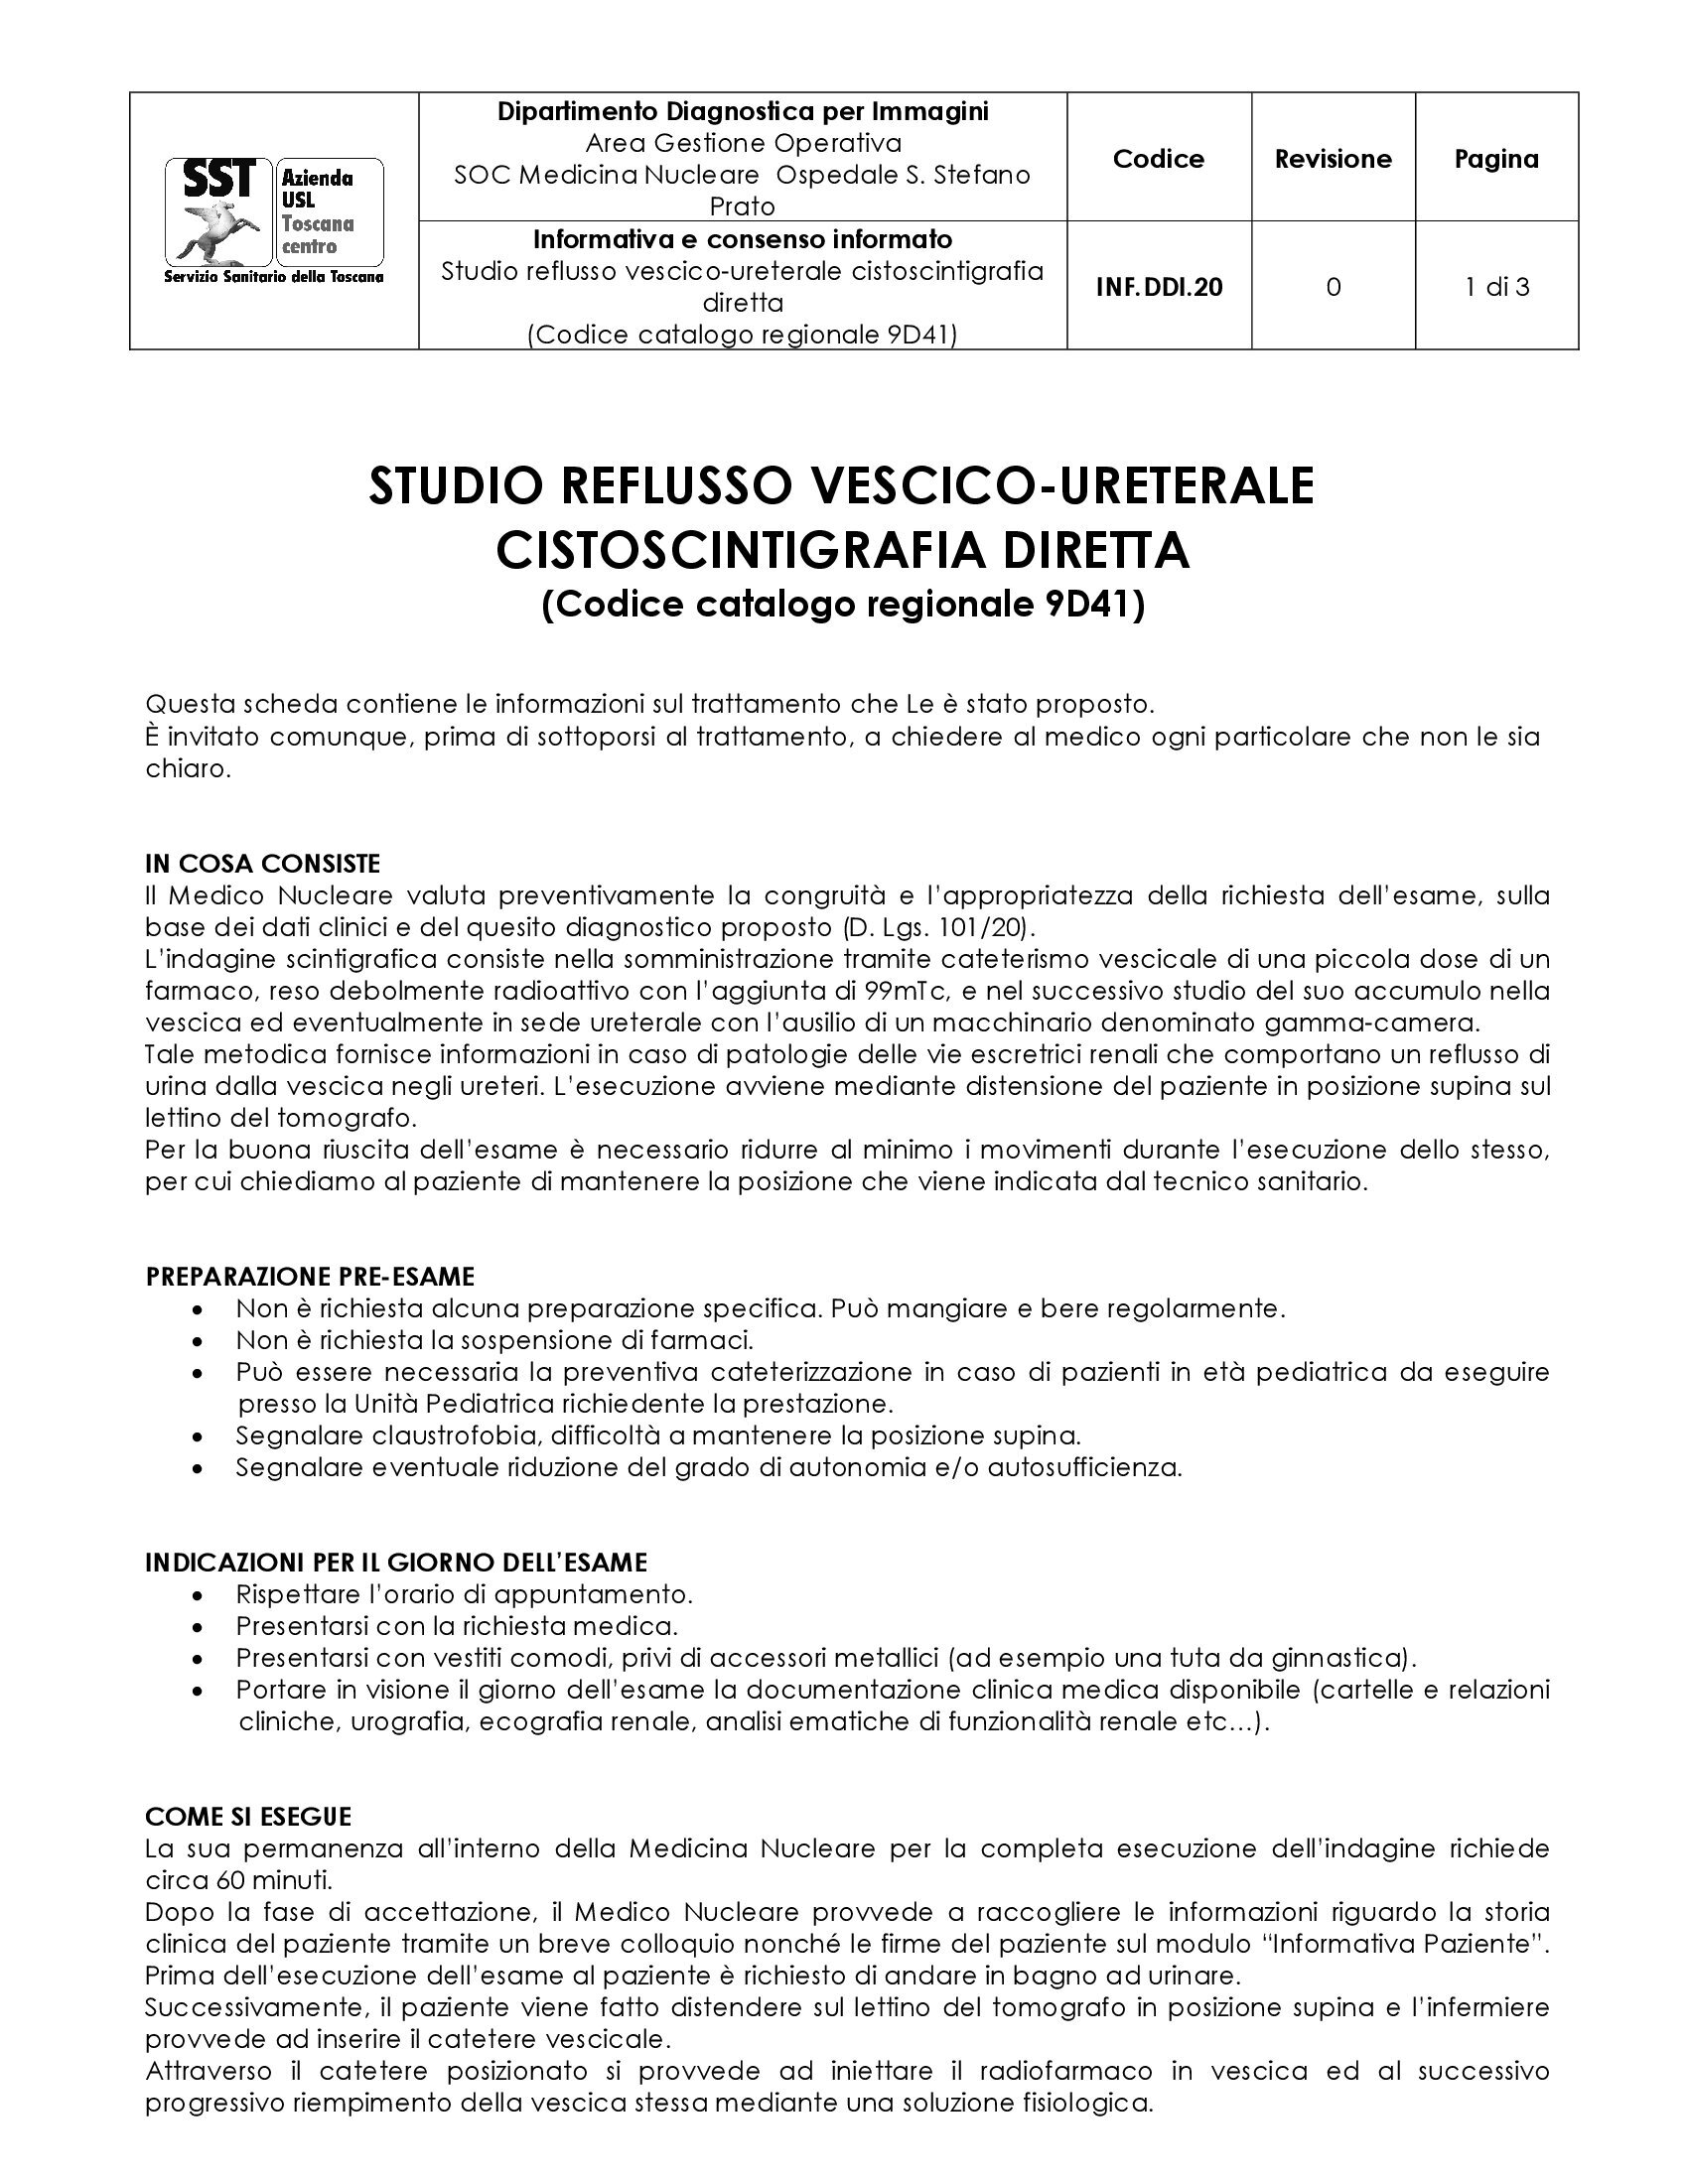 INF.DDI.20 Studio reflusso vescico-ureterale cistoscintigrafia diretta (Codice catalogo regionale 9D41)